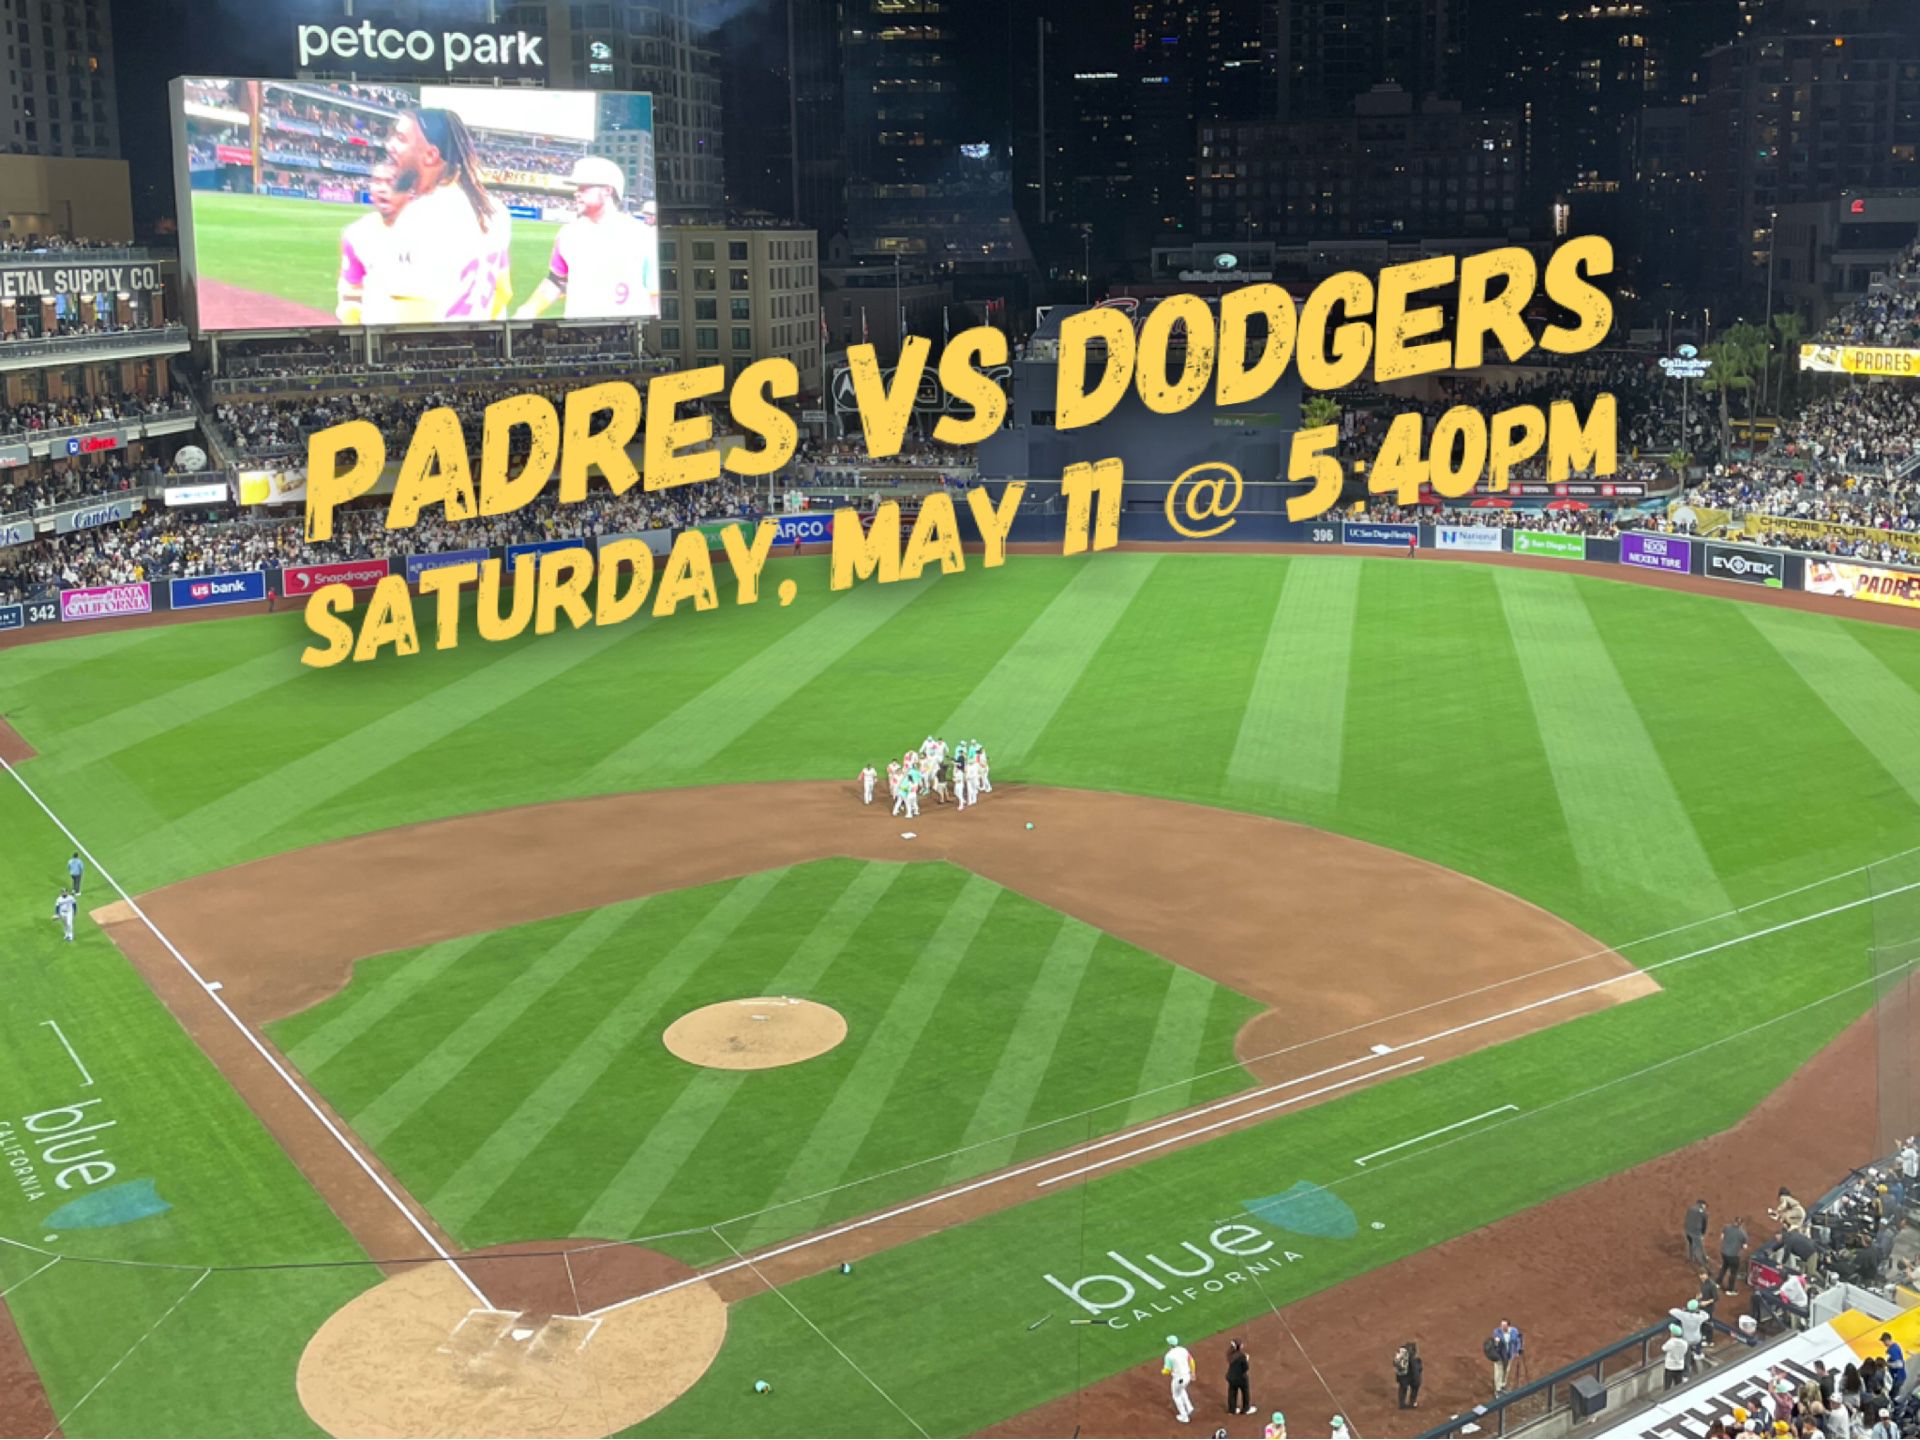 Padres vs Dodgers MLB Baseball Tickets - Saturday, May 11 @ 5:40pm